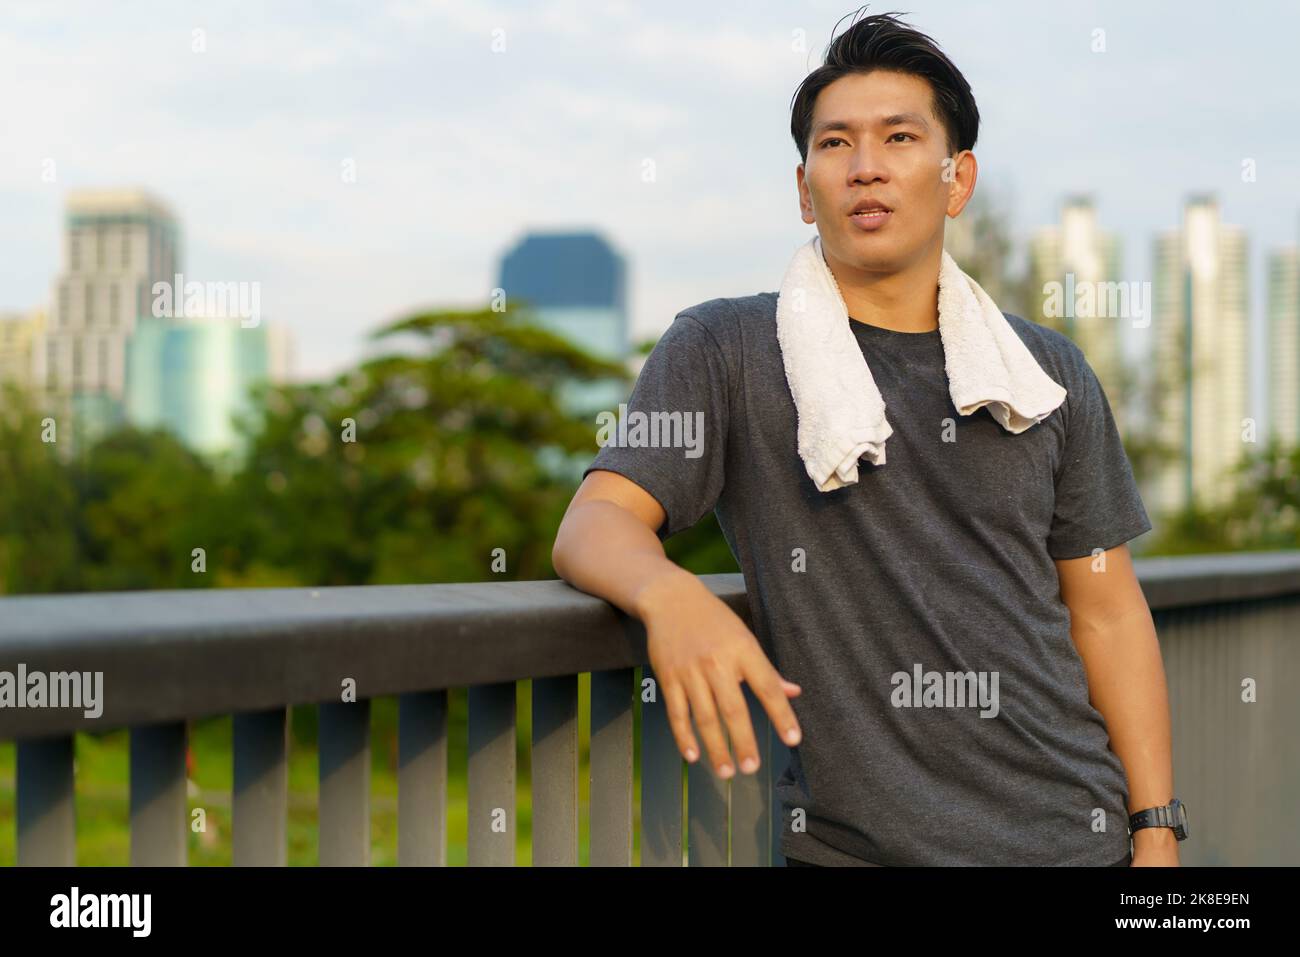 Porträt eines jungen asiatischen Mannes, der im Freien auf einem Gehweg mit Stadtgebäude im Stehen und Schweiß abwischt und Sportkleidung trägt. Stockfoto